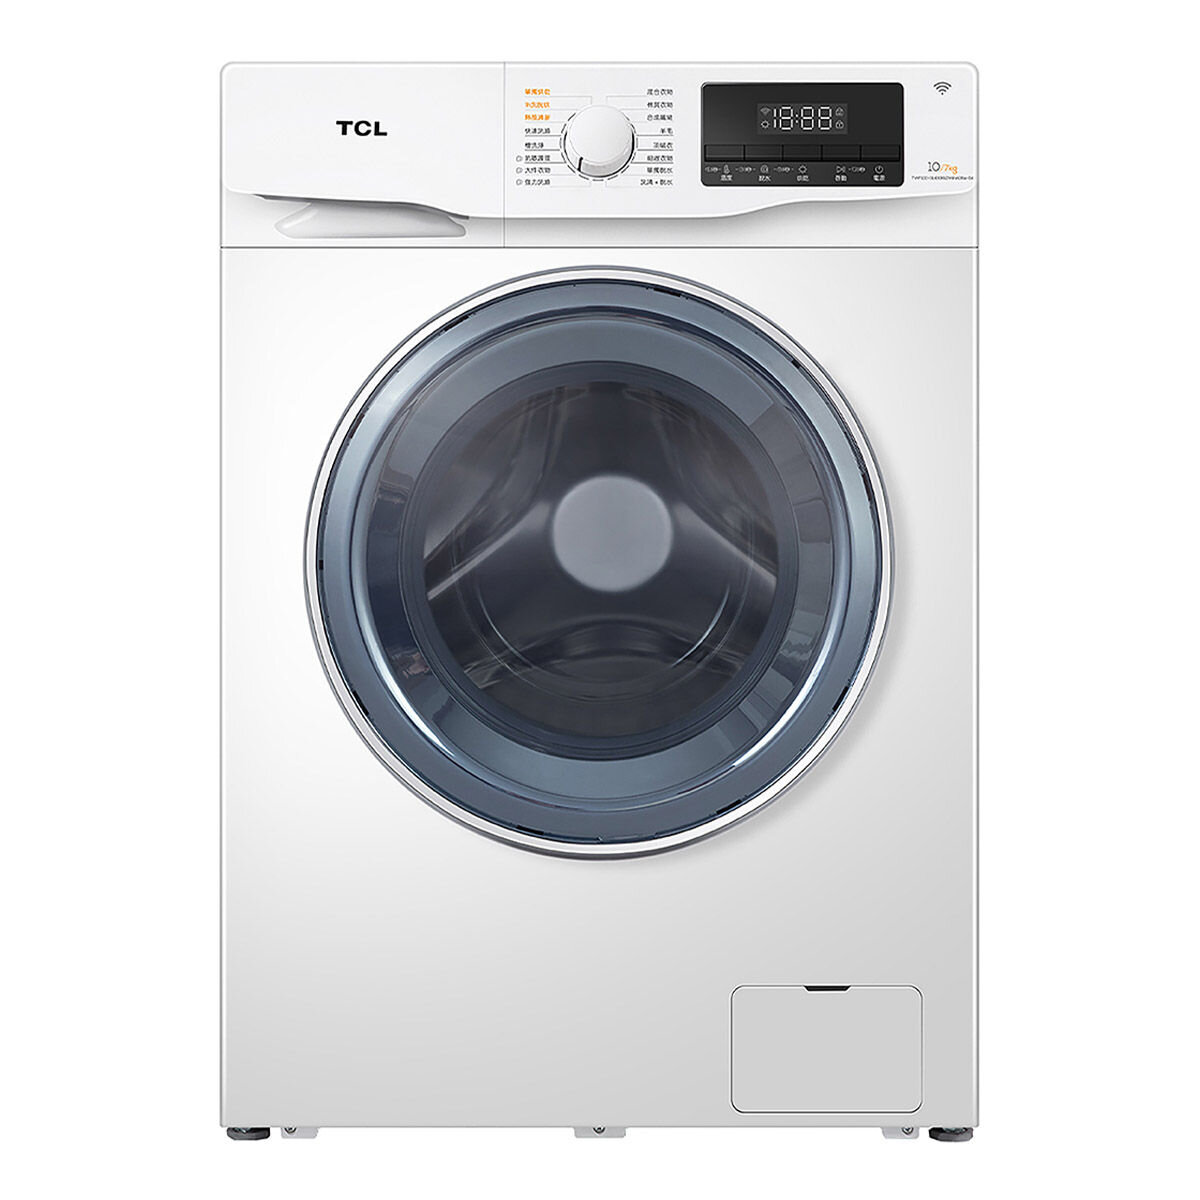 [問題] TCL的滾筒洗衣乾衣機